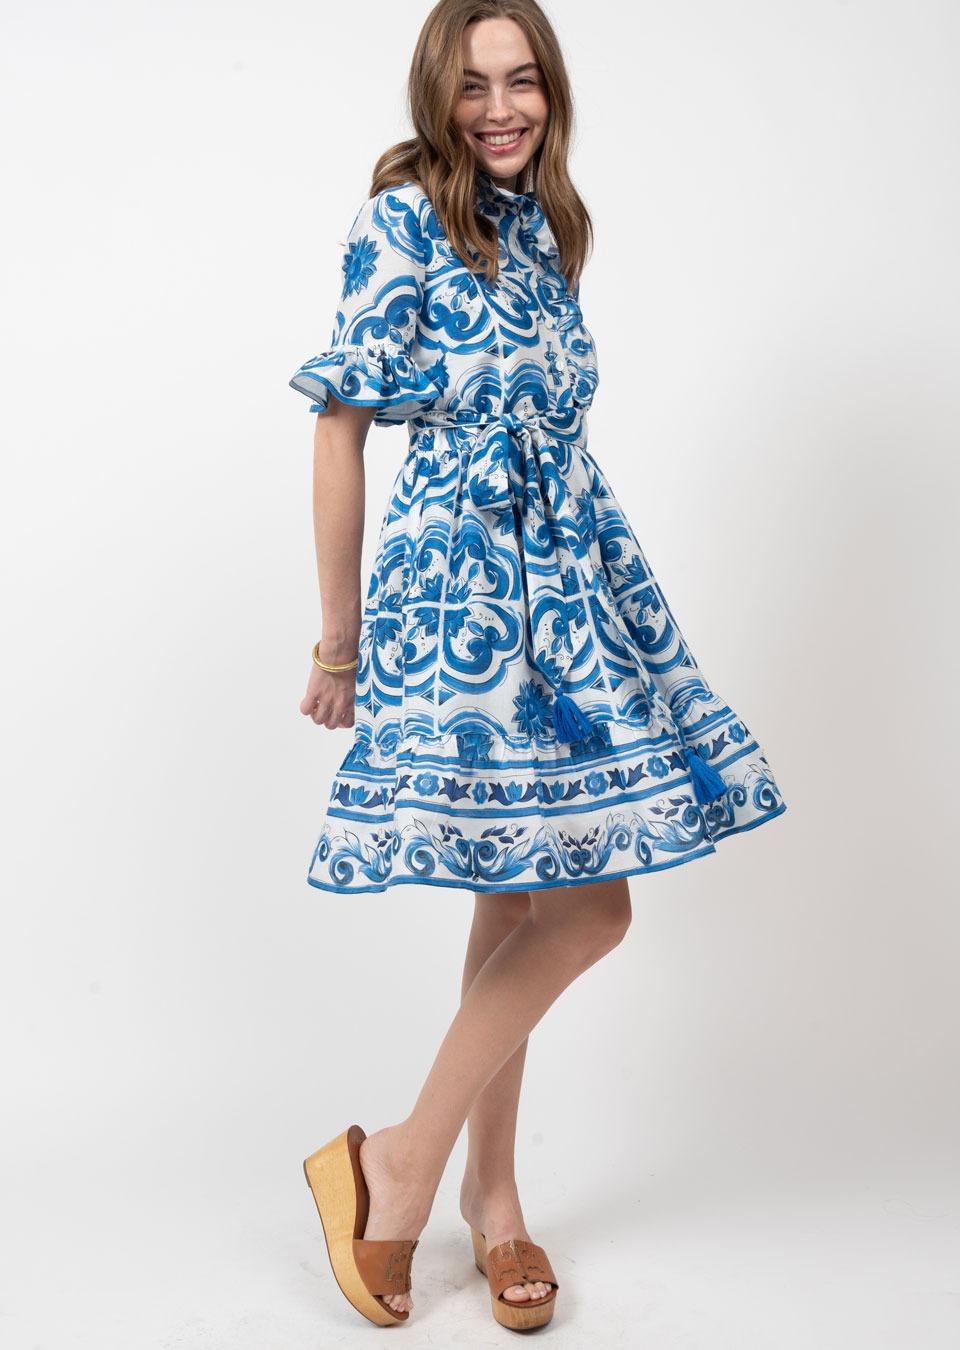 Tile Pattern Blue Dress Mini Dresses Ivy Jane   